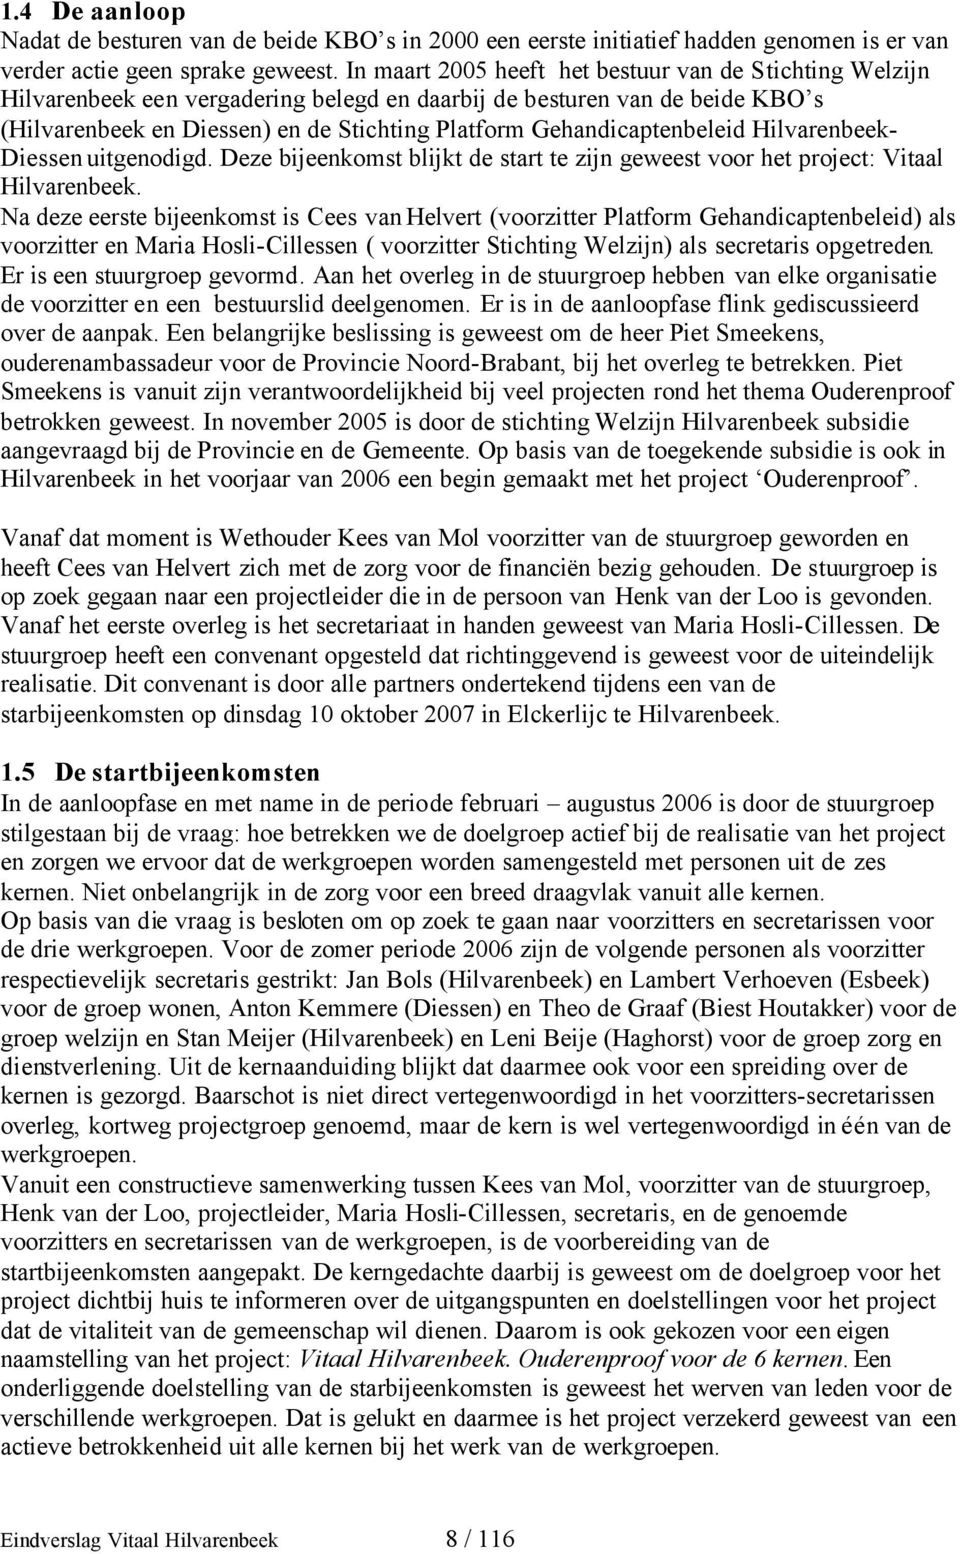 Gehandicaptenbeleid Hilvarenbeek- Diessen uitgenodigd. Deze bijeenkomst blijkt de start te zijn geweest voor het project: Vitaal Hilvarenbeek.